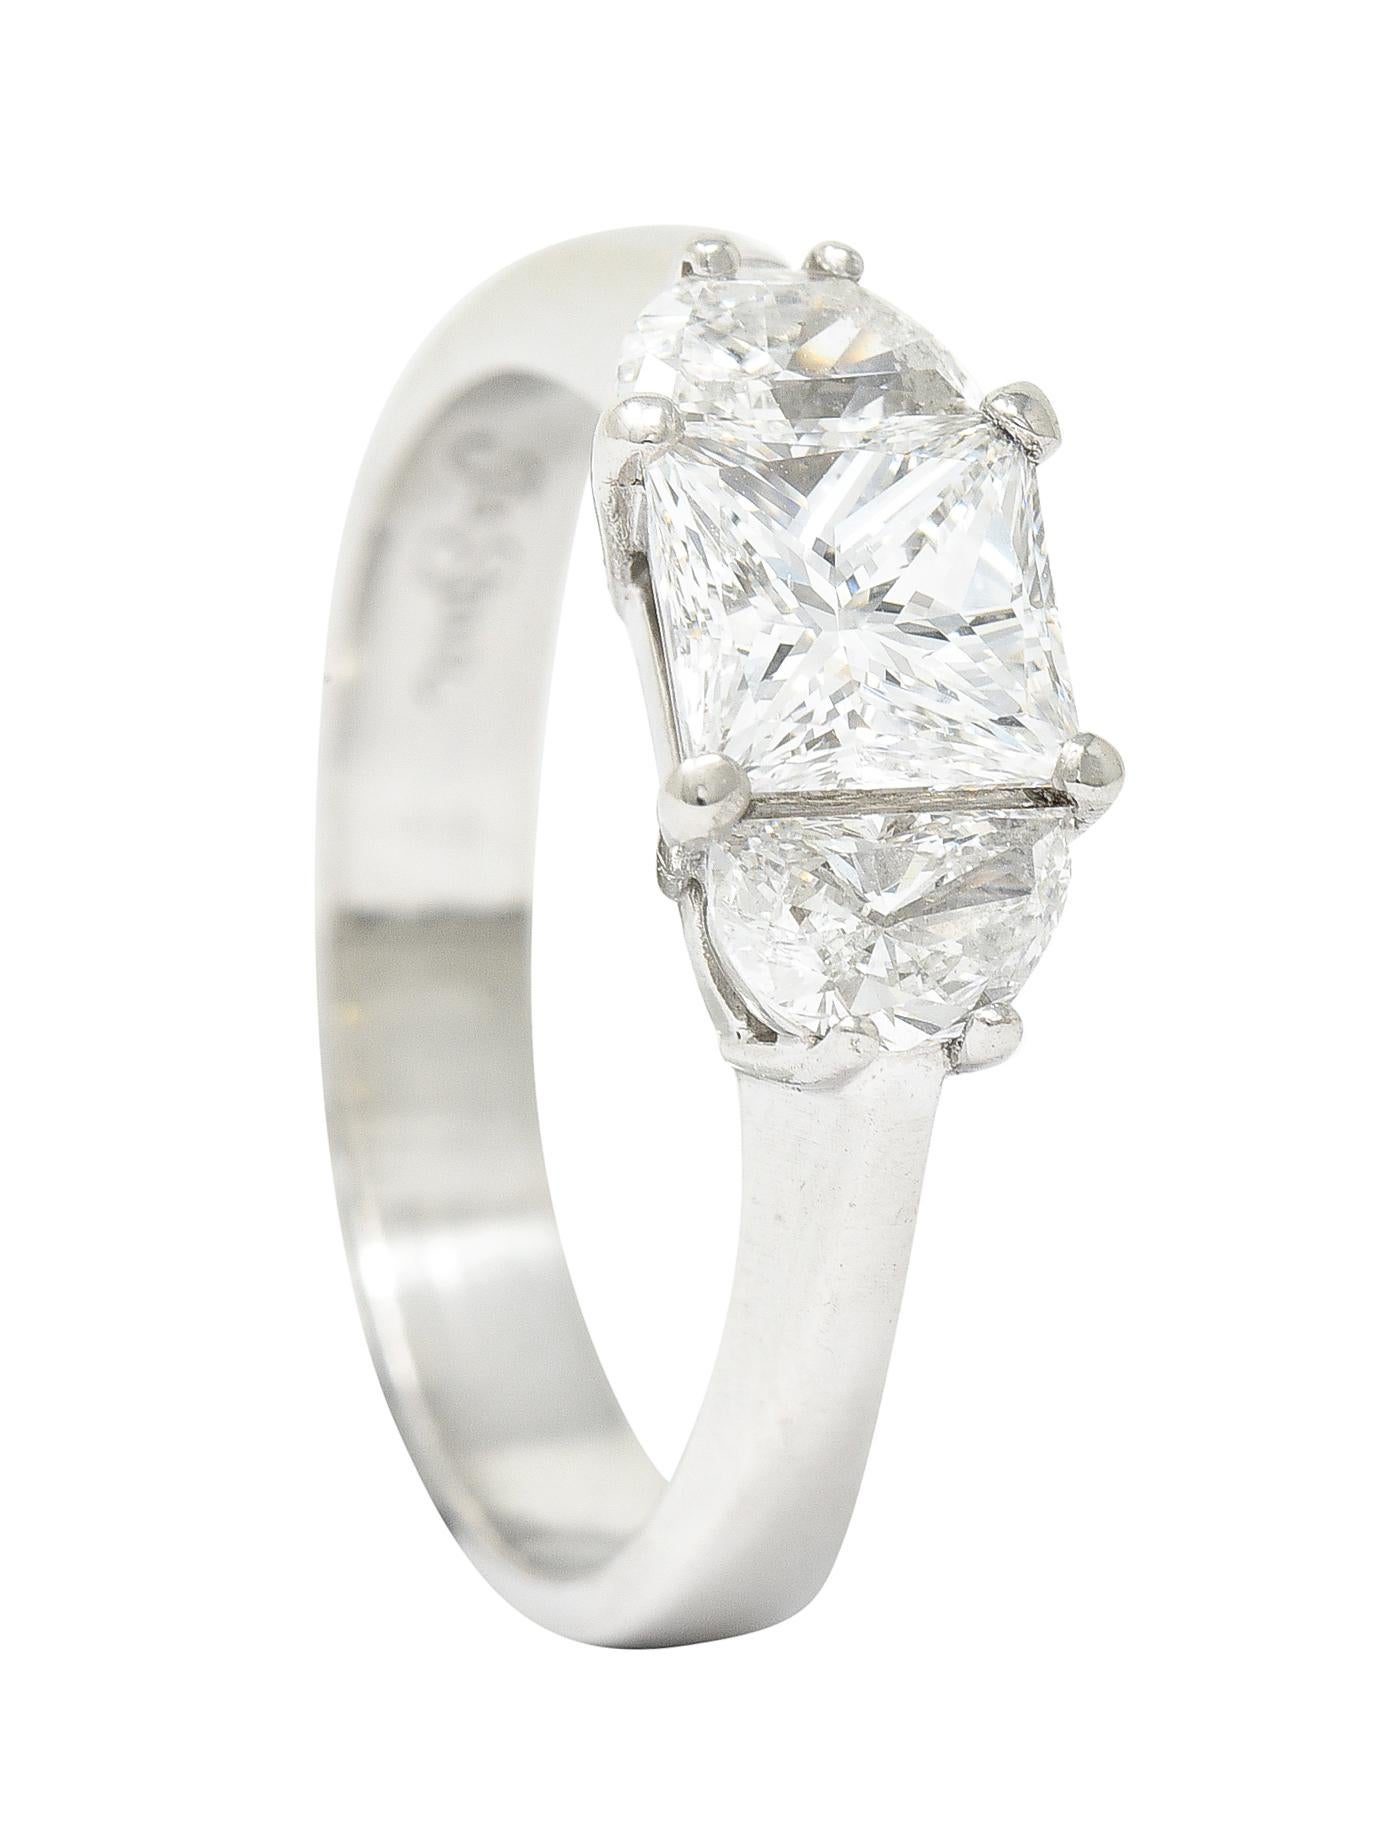 JB Star 1.55 Carats Princess Cut Diamond Platinum Engagement Ring GIA 6